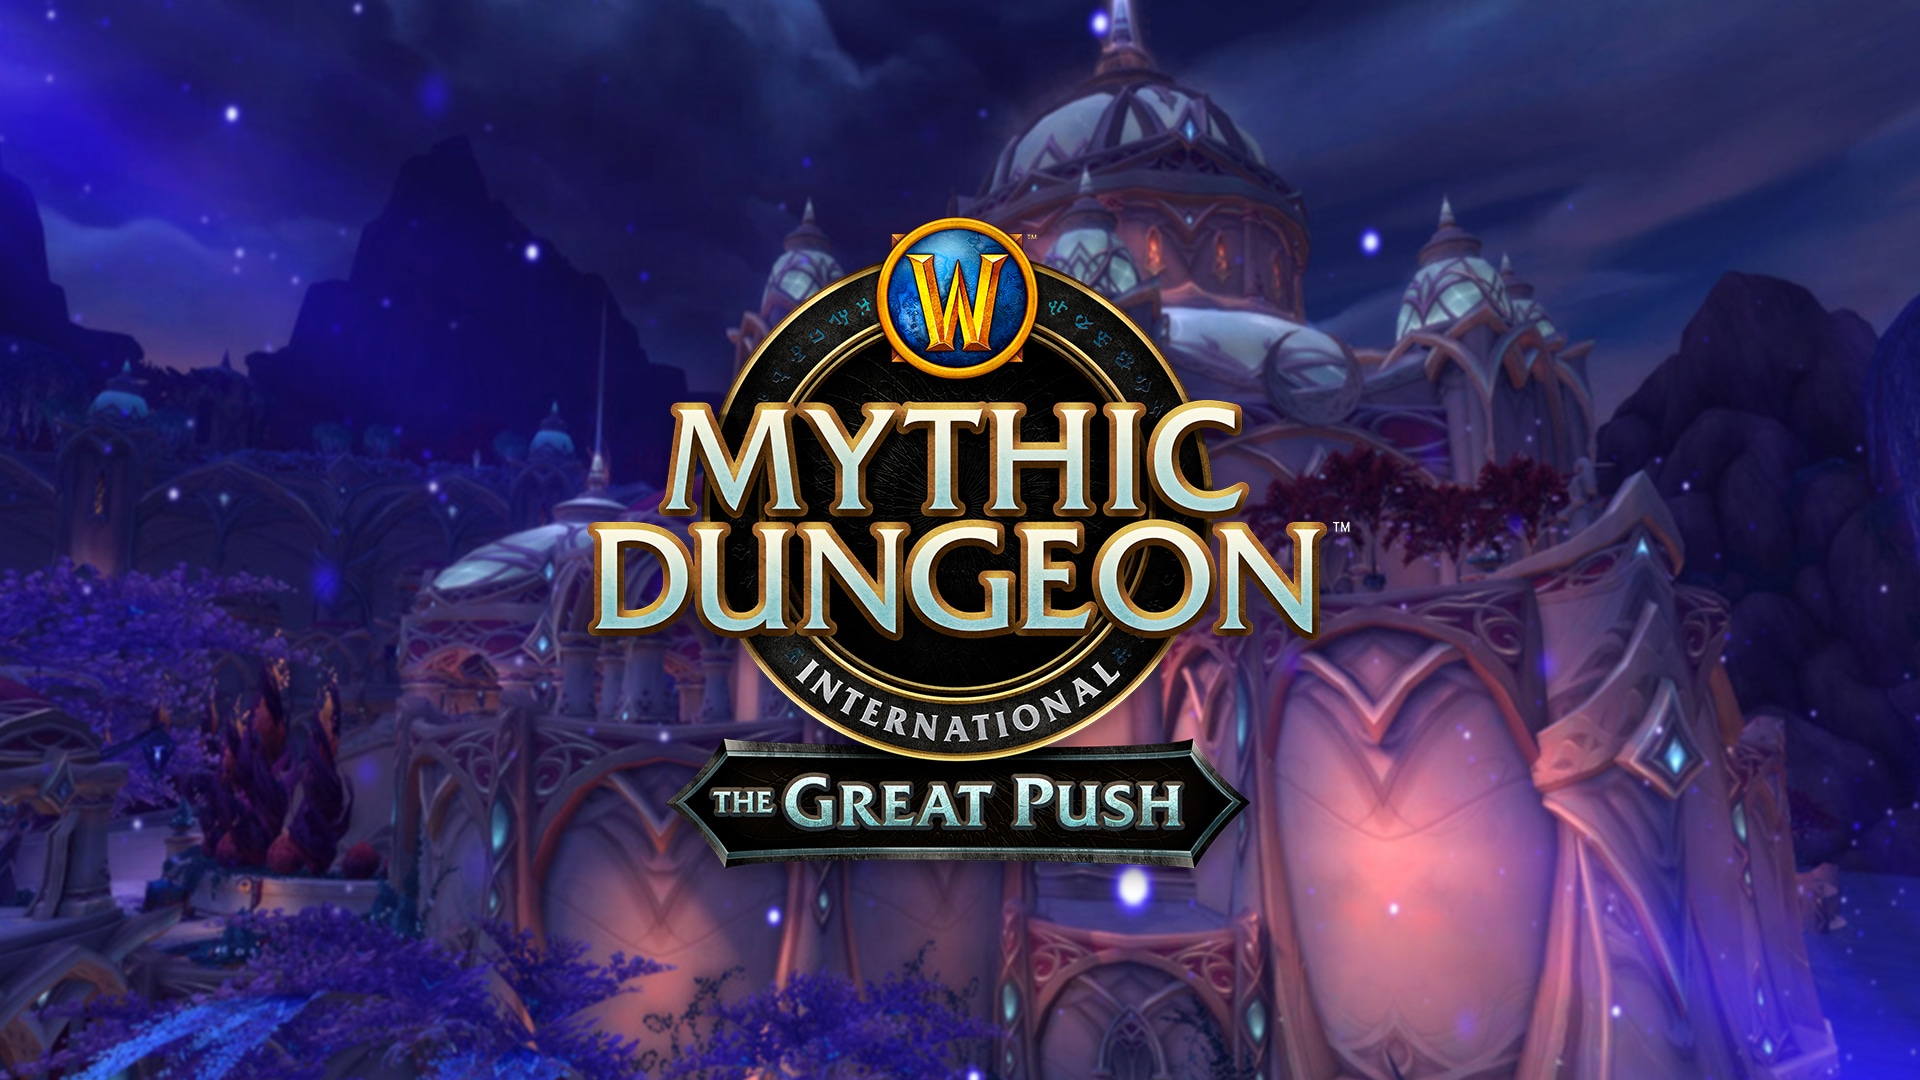 La saison 2 de The Great Push de World of Warcraft commence bientôt !